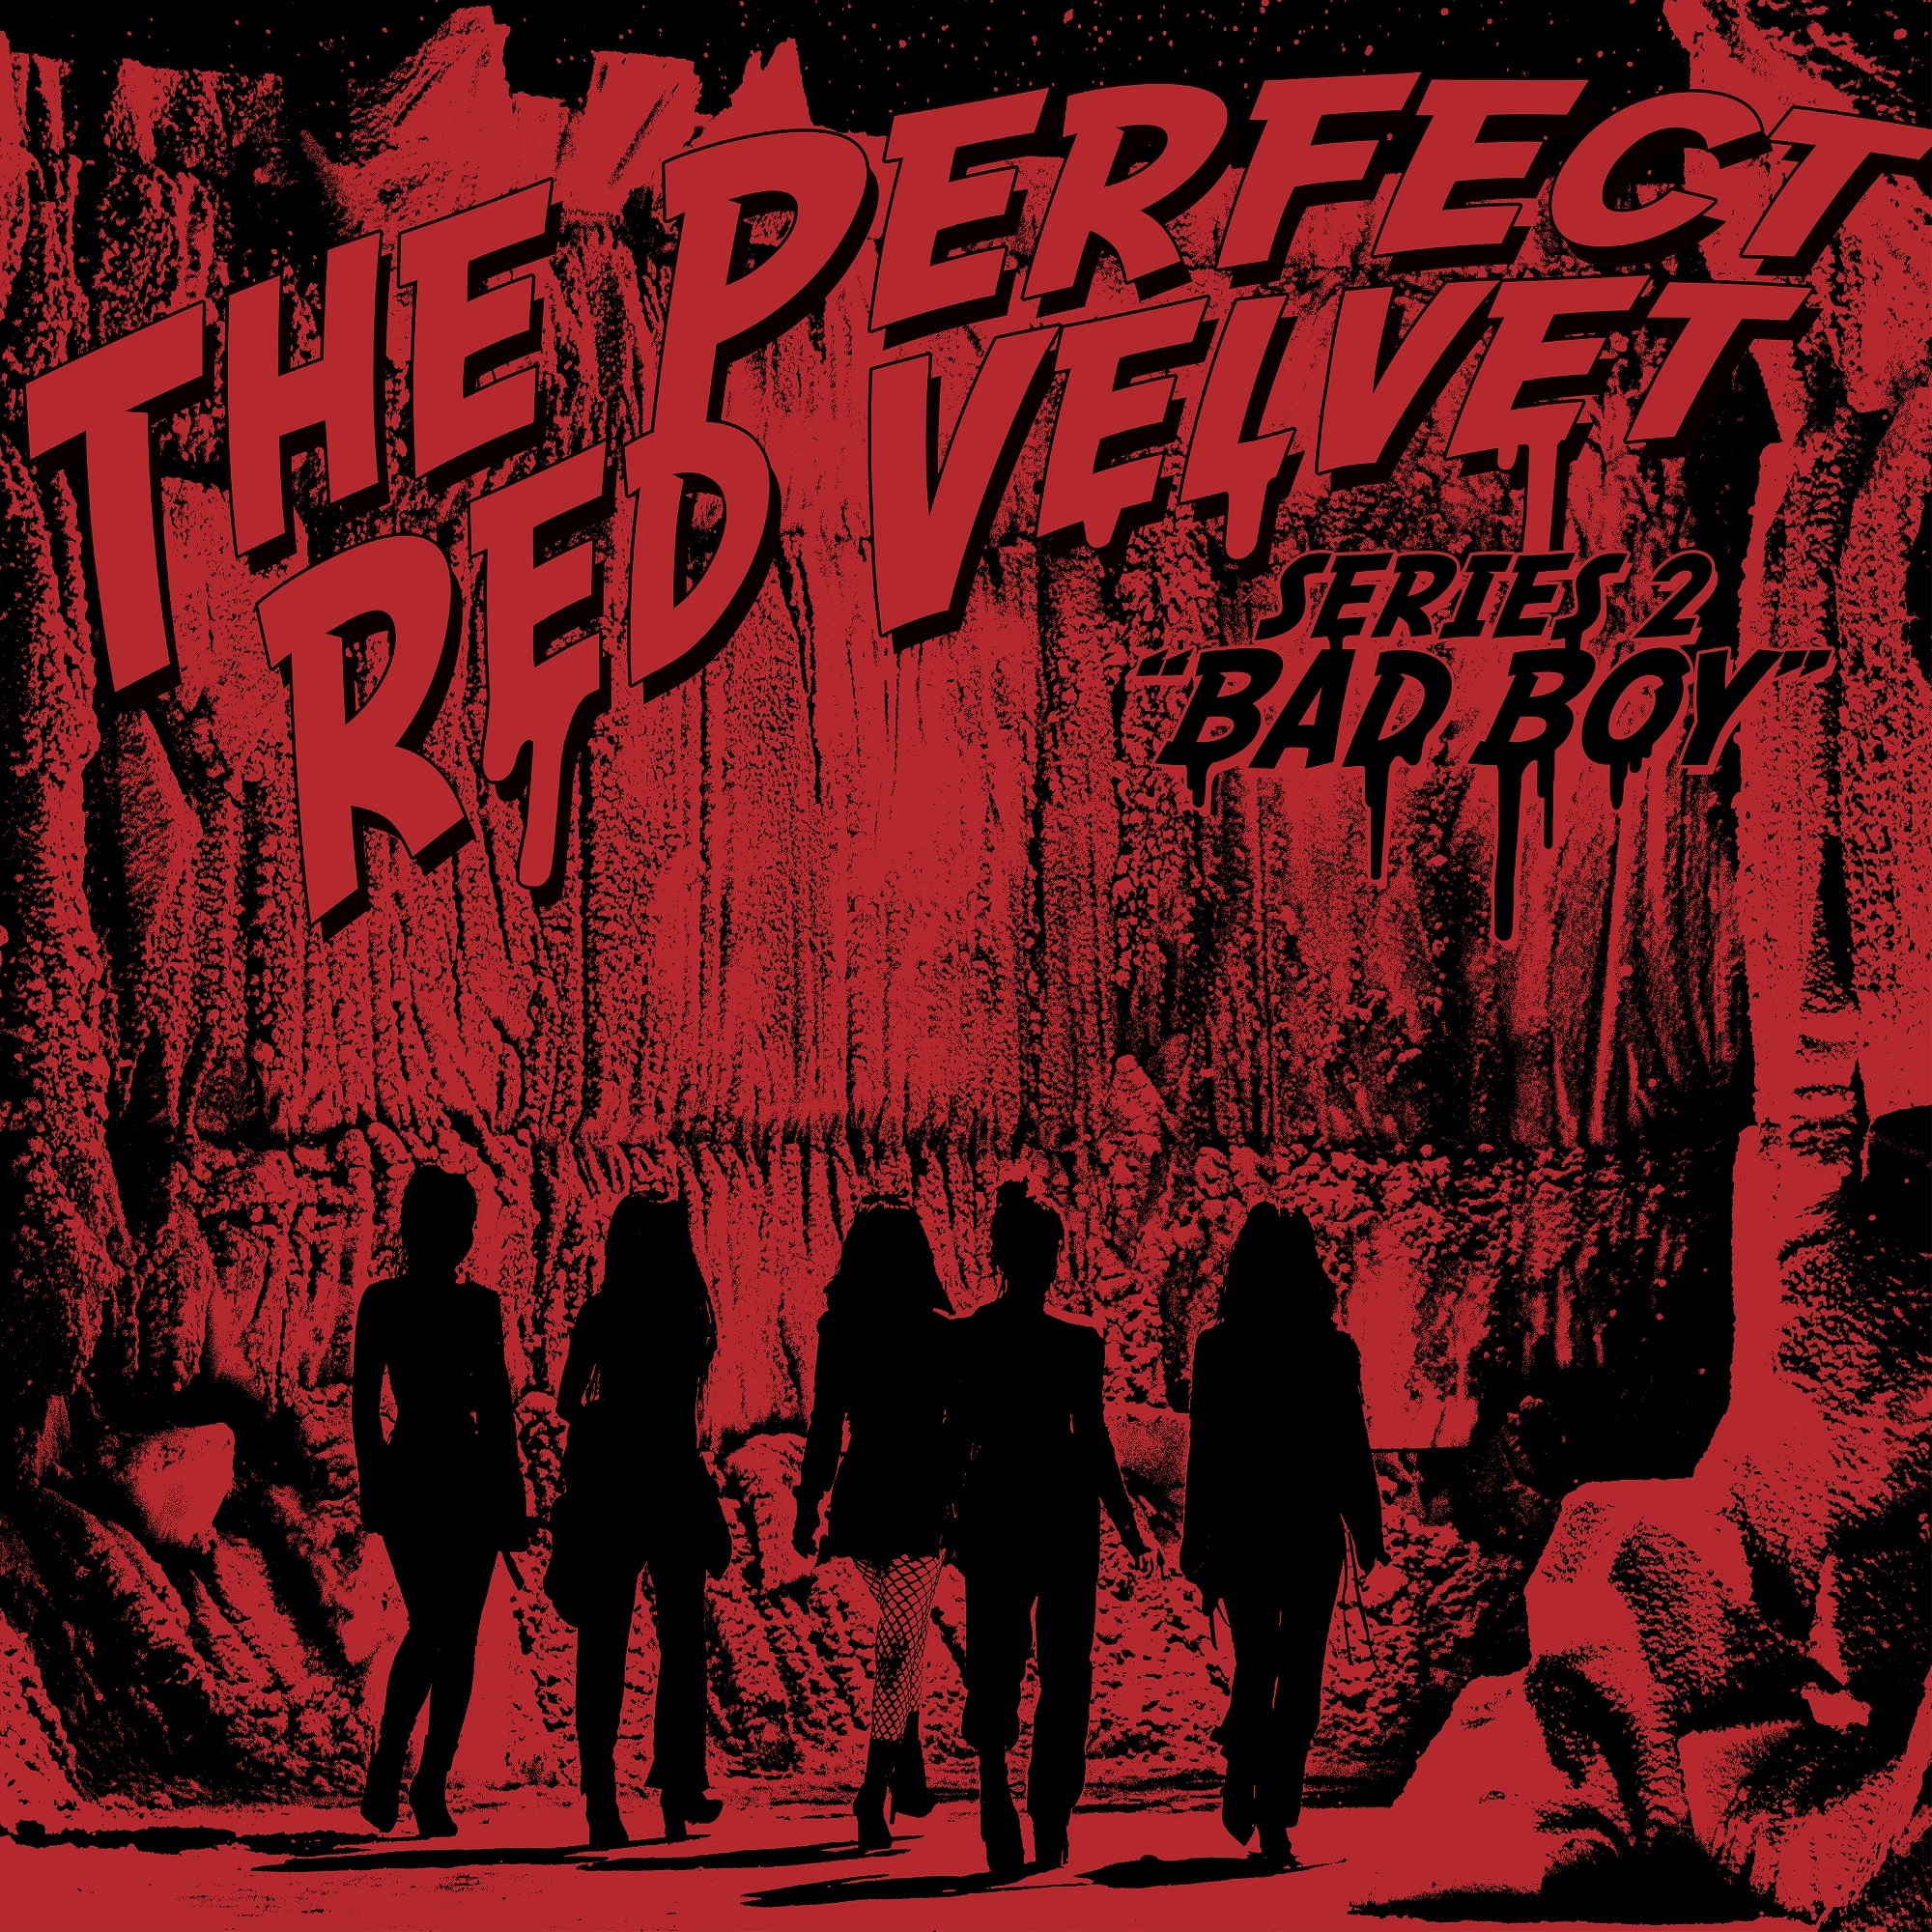 Bad Boy(韓國女團Red Velvet演唱歌曲)